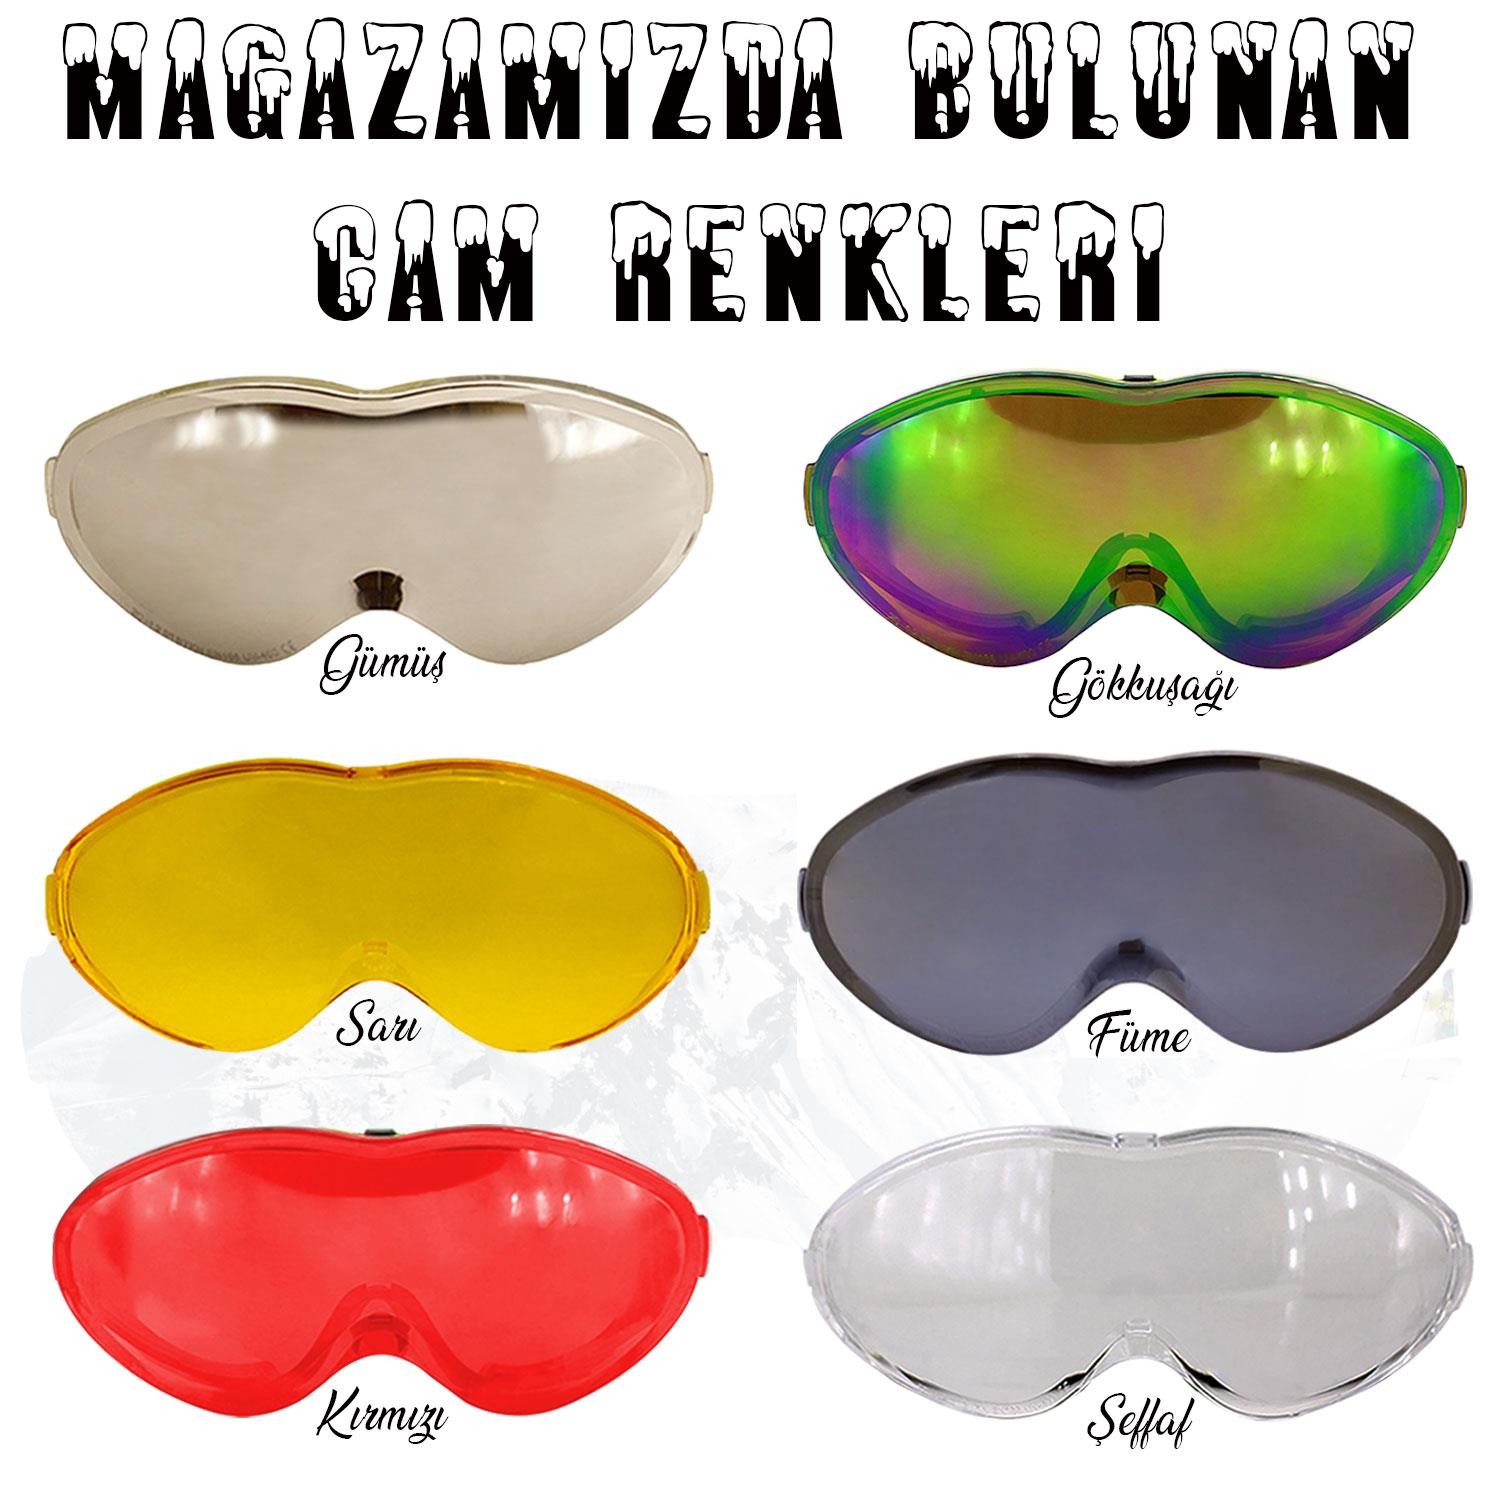 Bellasimo Çerçevesiz Kayak Gözlüğü Camı Lens Değiştirebilir Cam Antifog Güneş Kar Gözlük Camı Gümüş